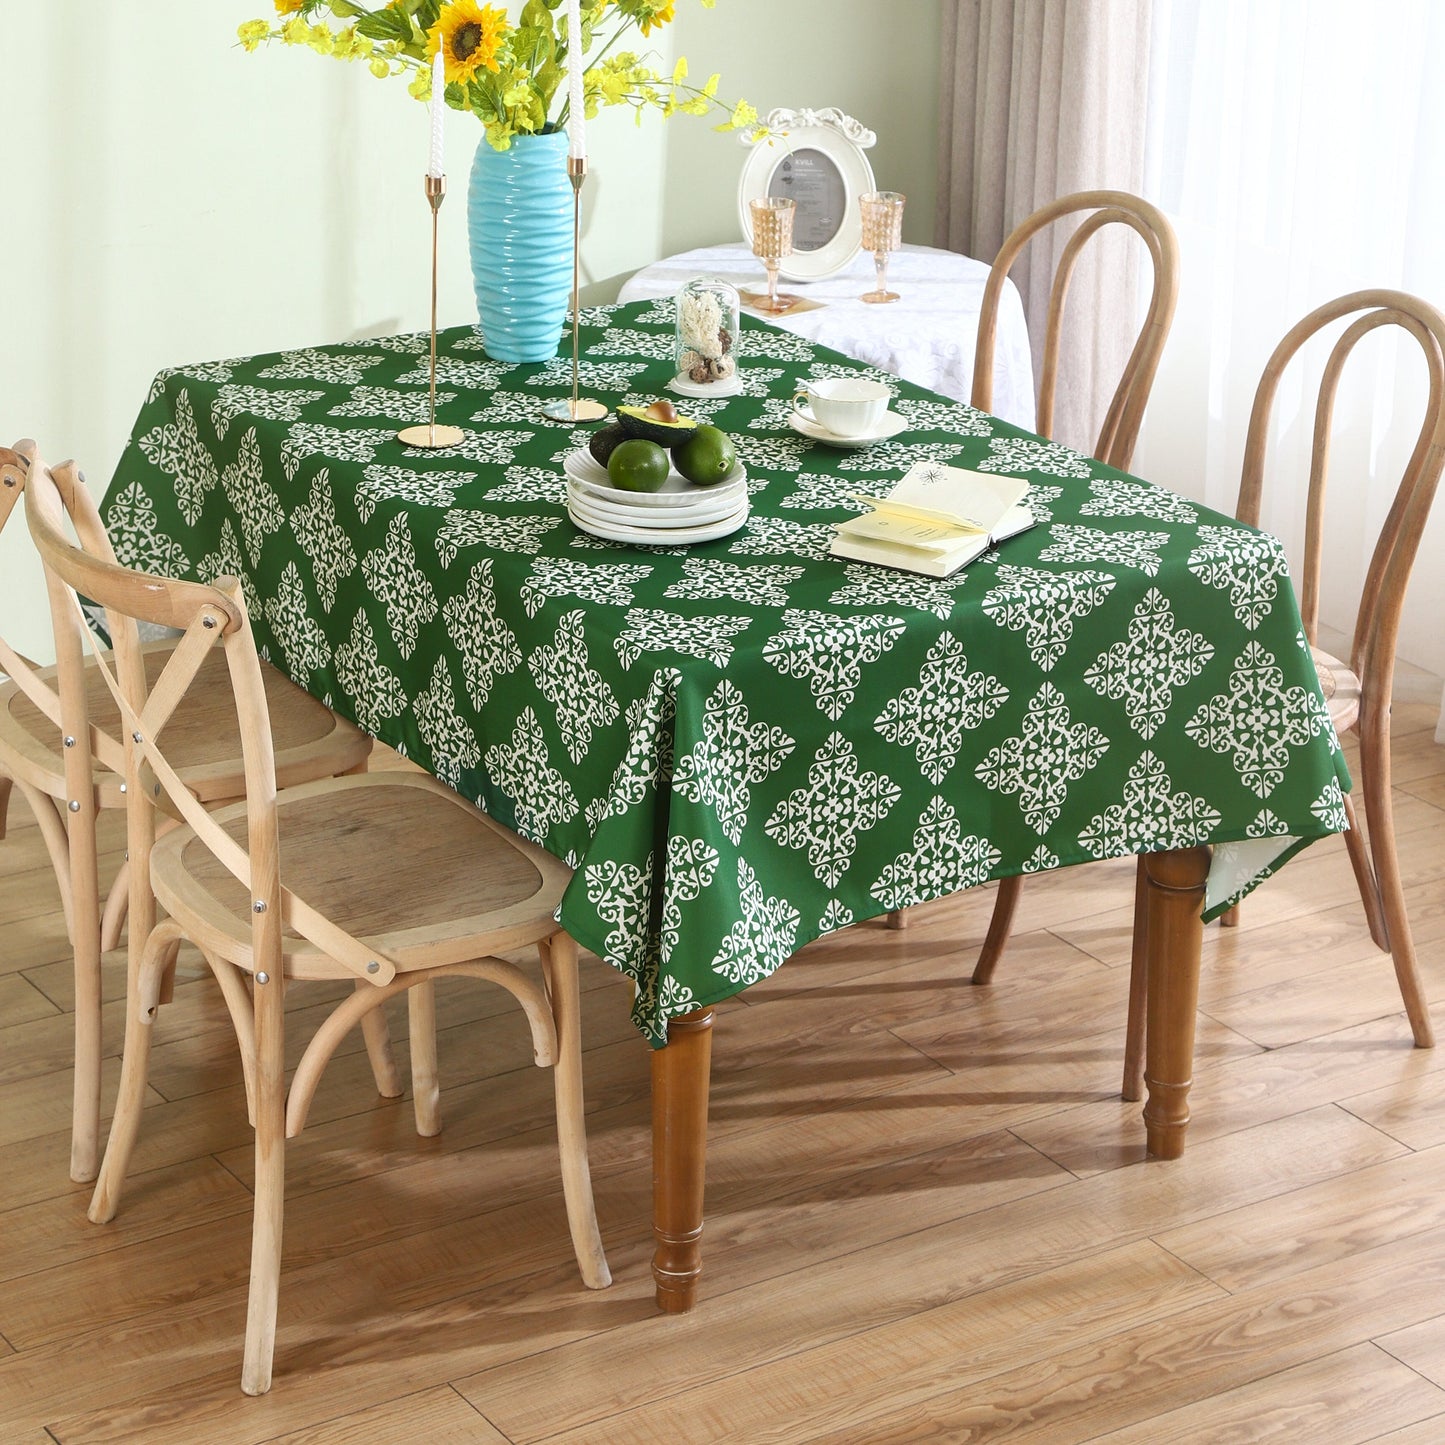 Water Resistant Indoor Outdoor Table Cloth 137x185 CM (Green) - Design TC3-1